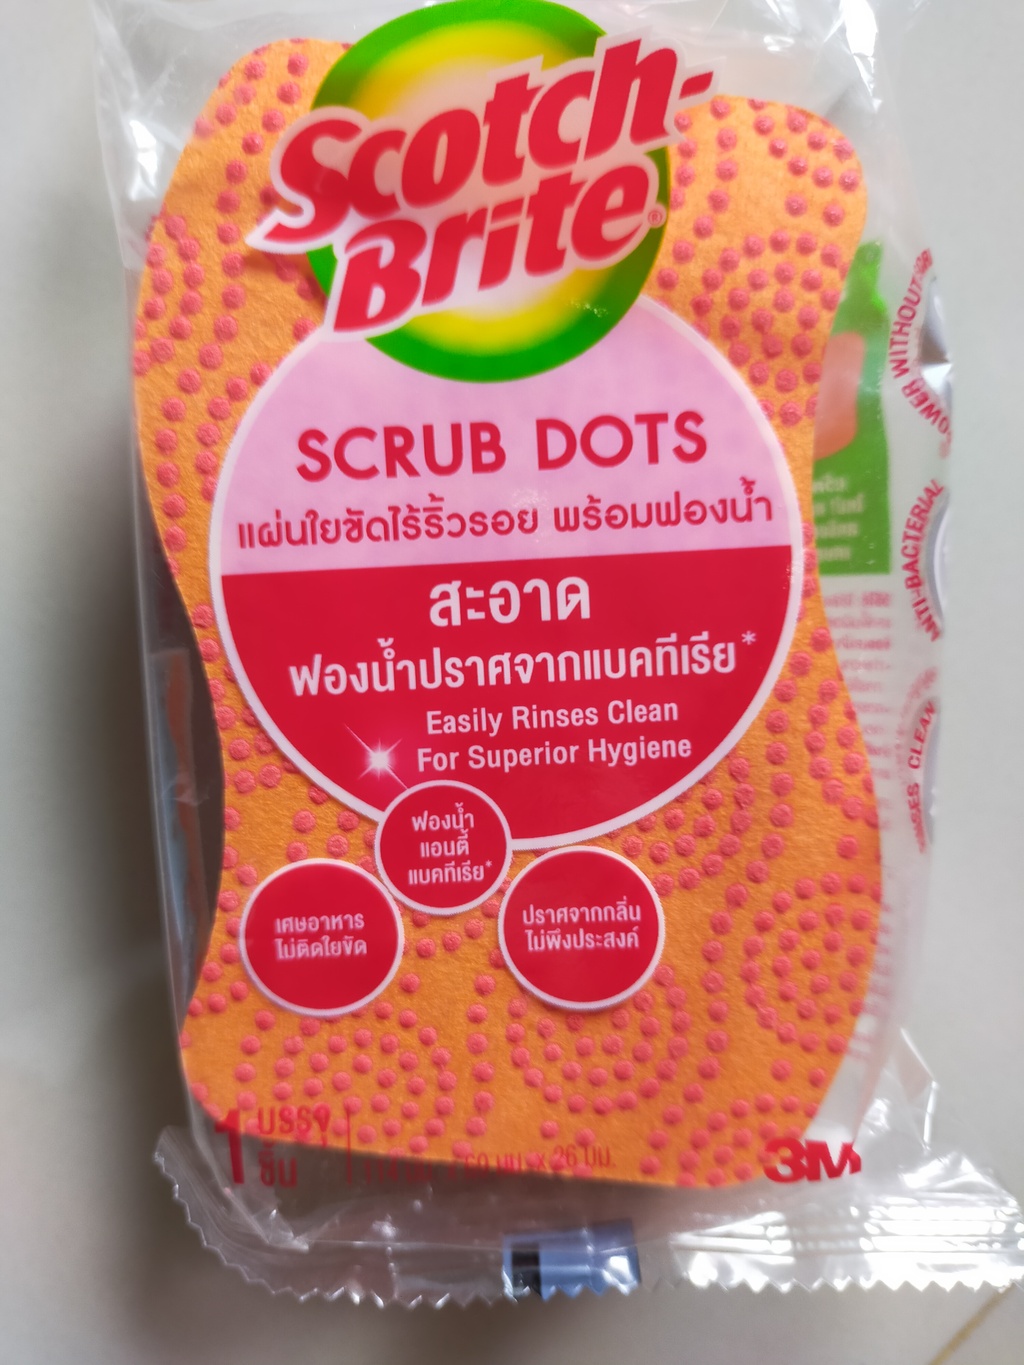 สก๊อตช์-ไบรต์® Scrub Dots รีวิว